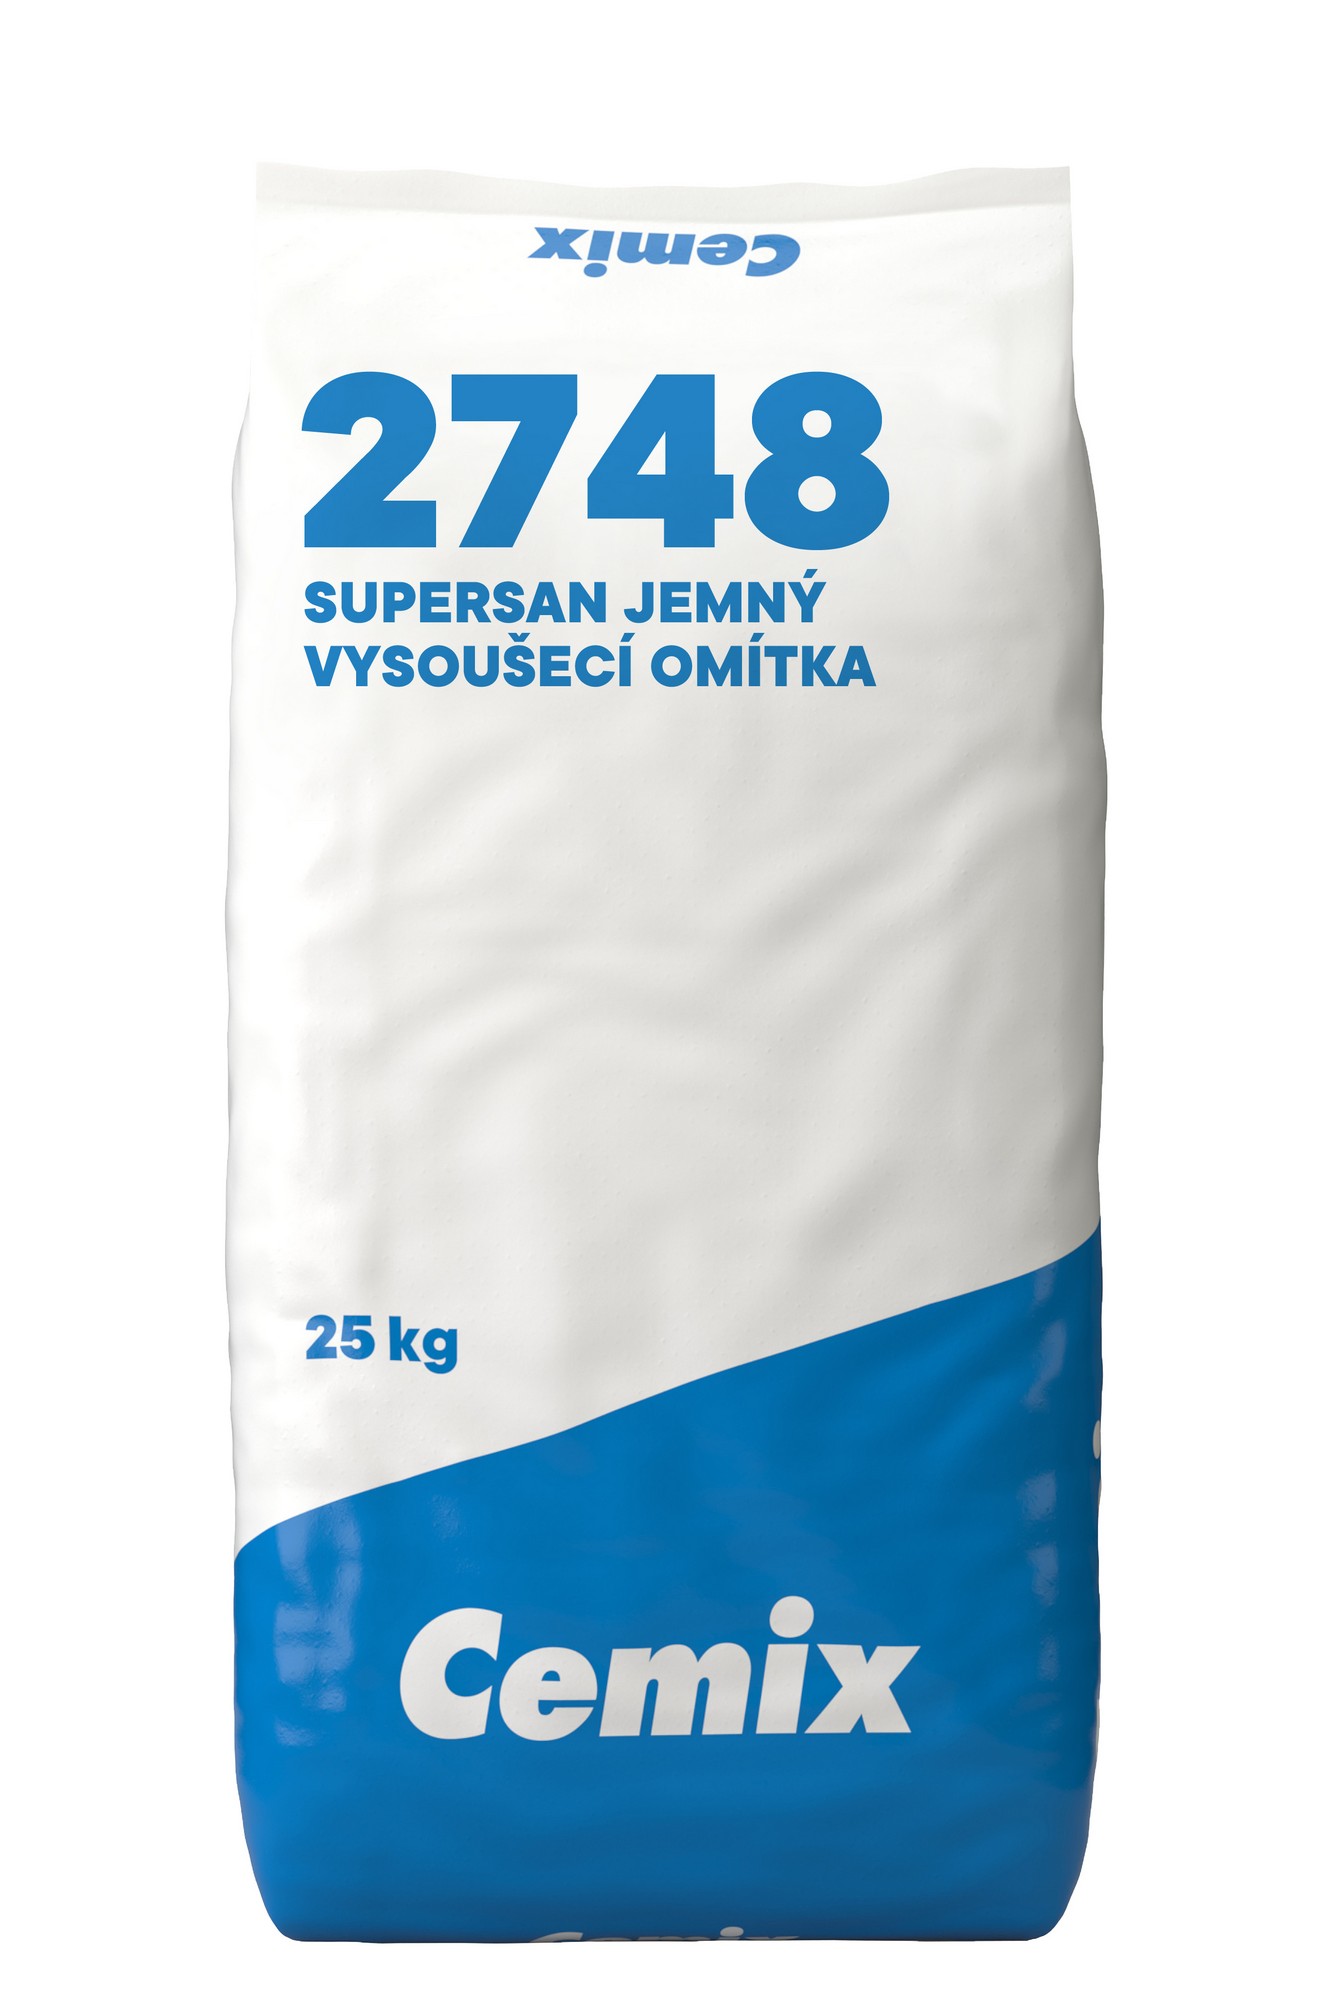 Omítka vysoušecí štuková Cemix 2748 SUPERSAN jemná 25 kg Cemix